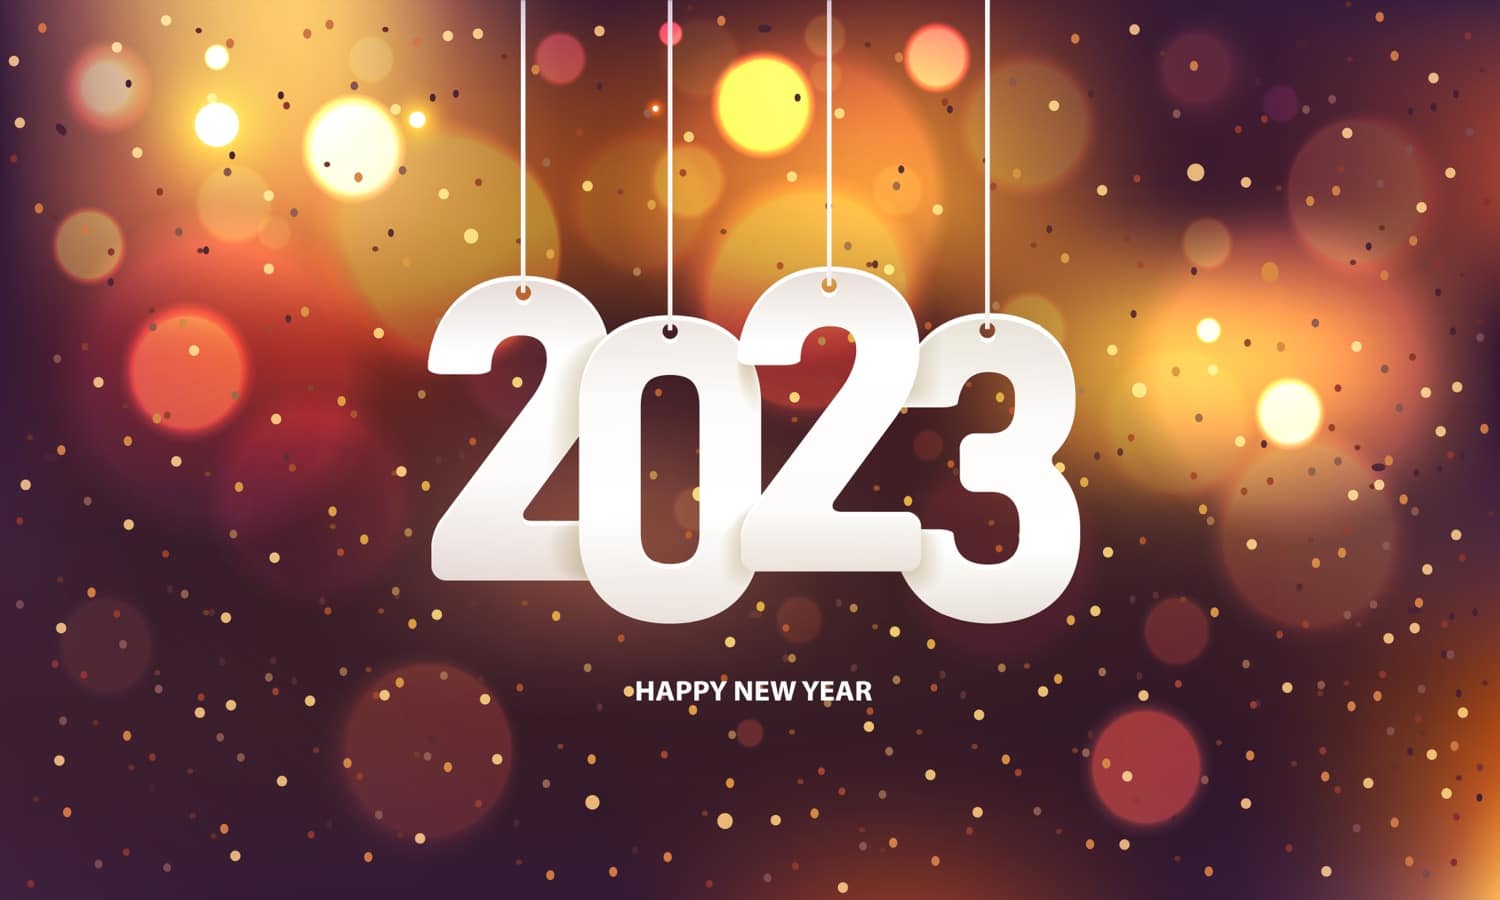 Hueblog: Hueblog wünscht euch ein frohes neues Jahr